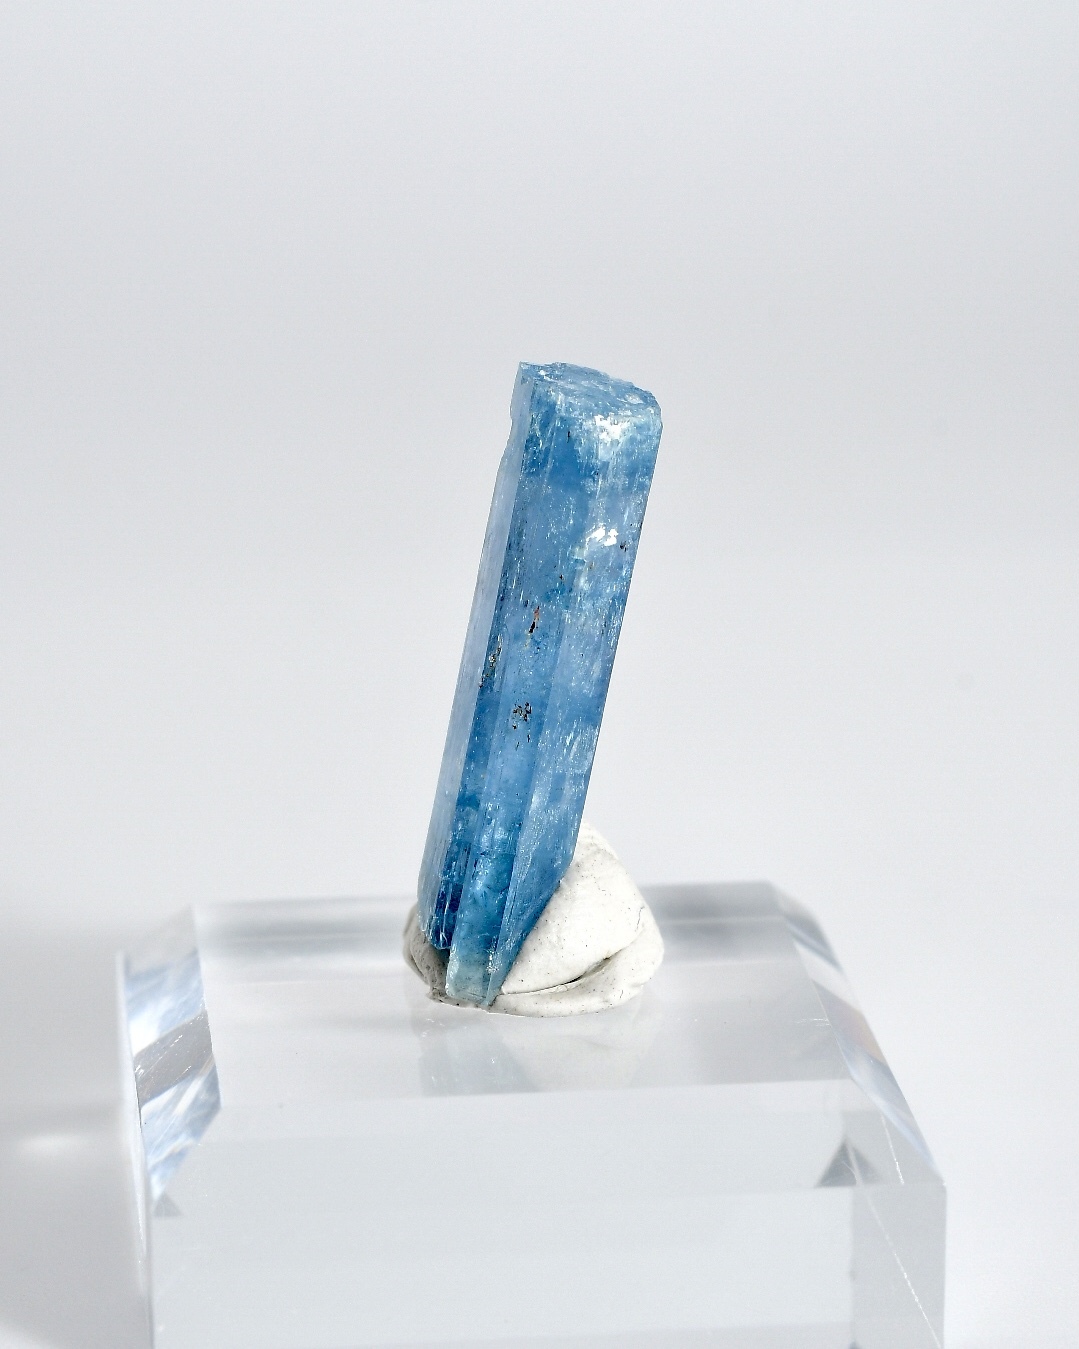 ベトナム産 アクアマリン 原石 結晶 Vietnam Aquamarine rough stone crystal vaqd8 5.95ctを仕入れる  | ECモールに無い商品の仕入れならorosy（オロシー）